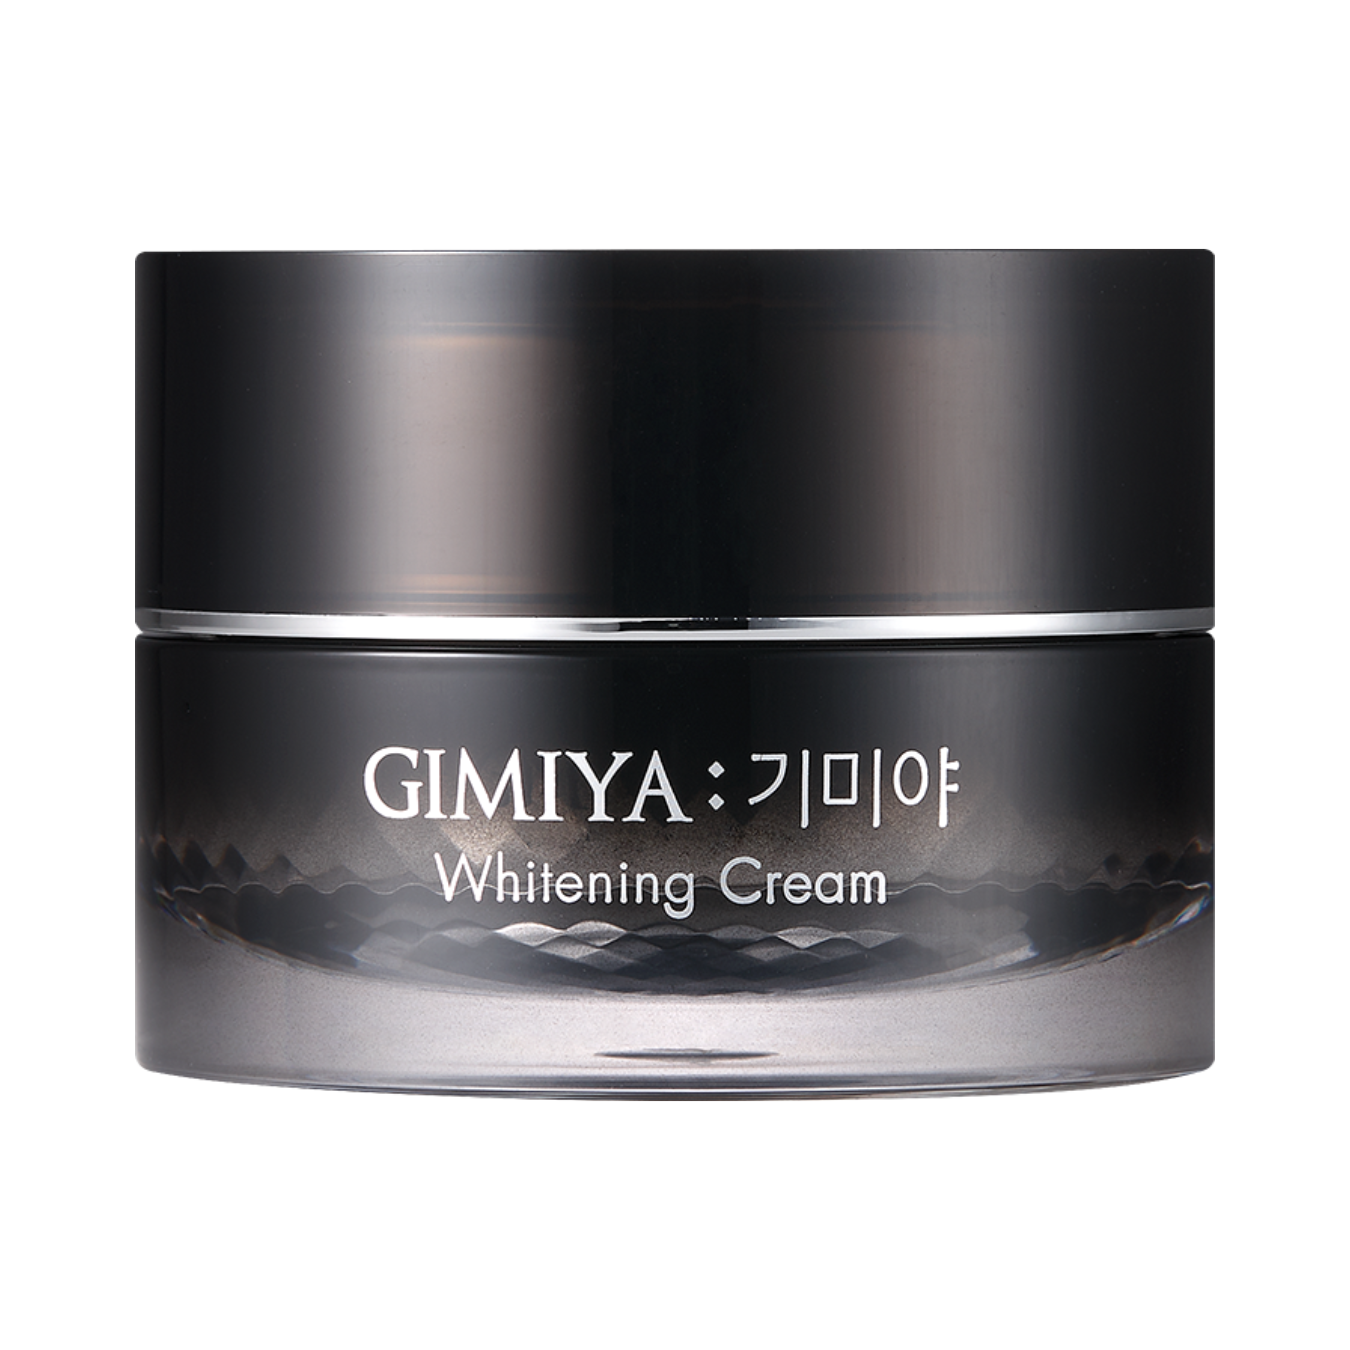 Gimiya Whitening Cream